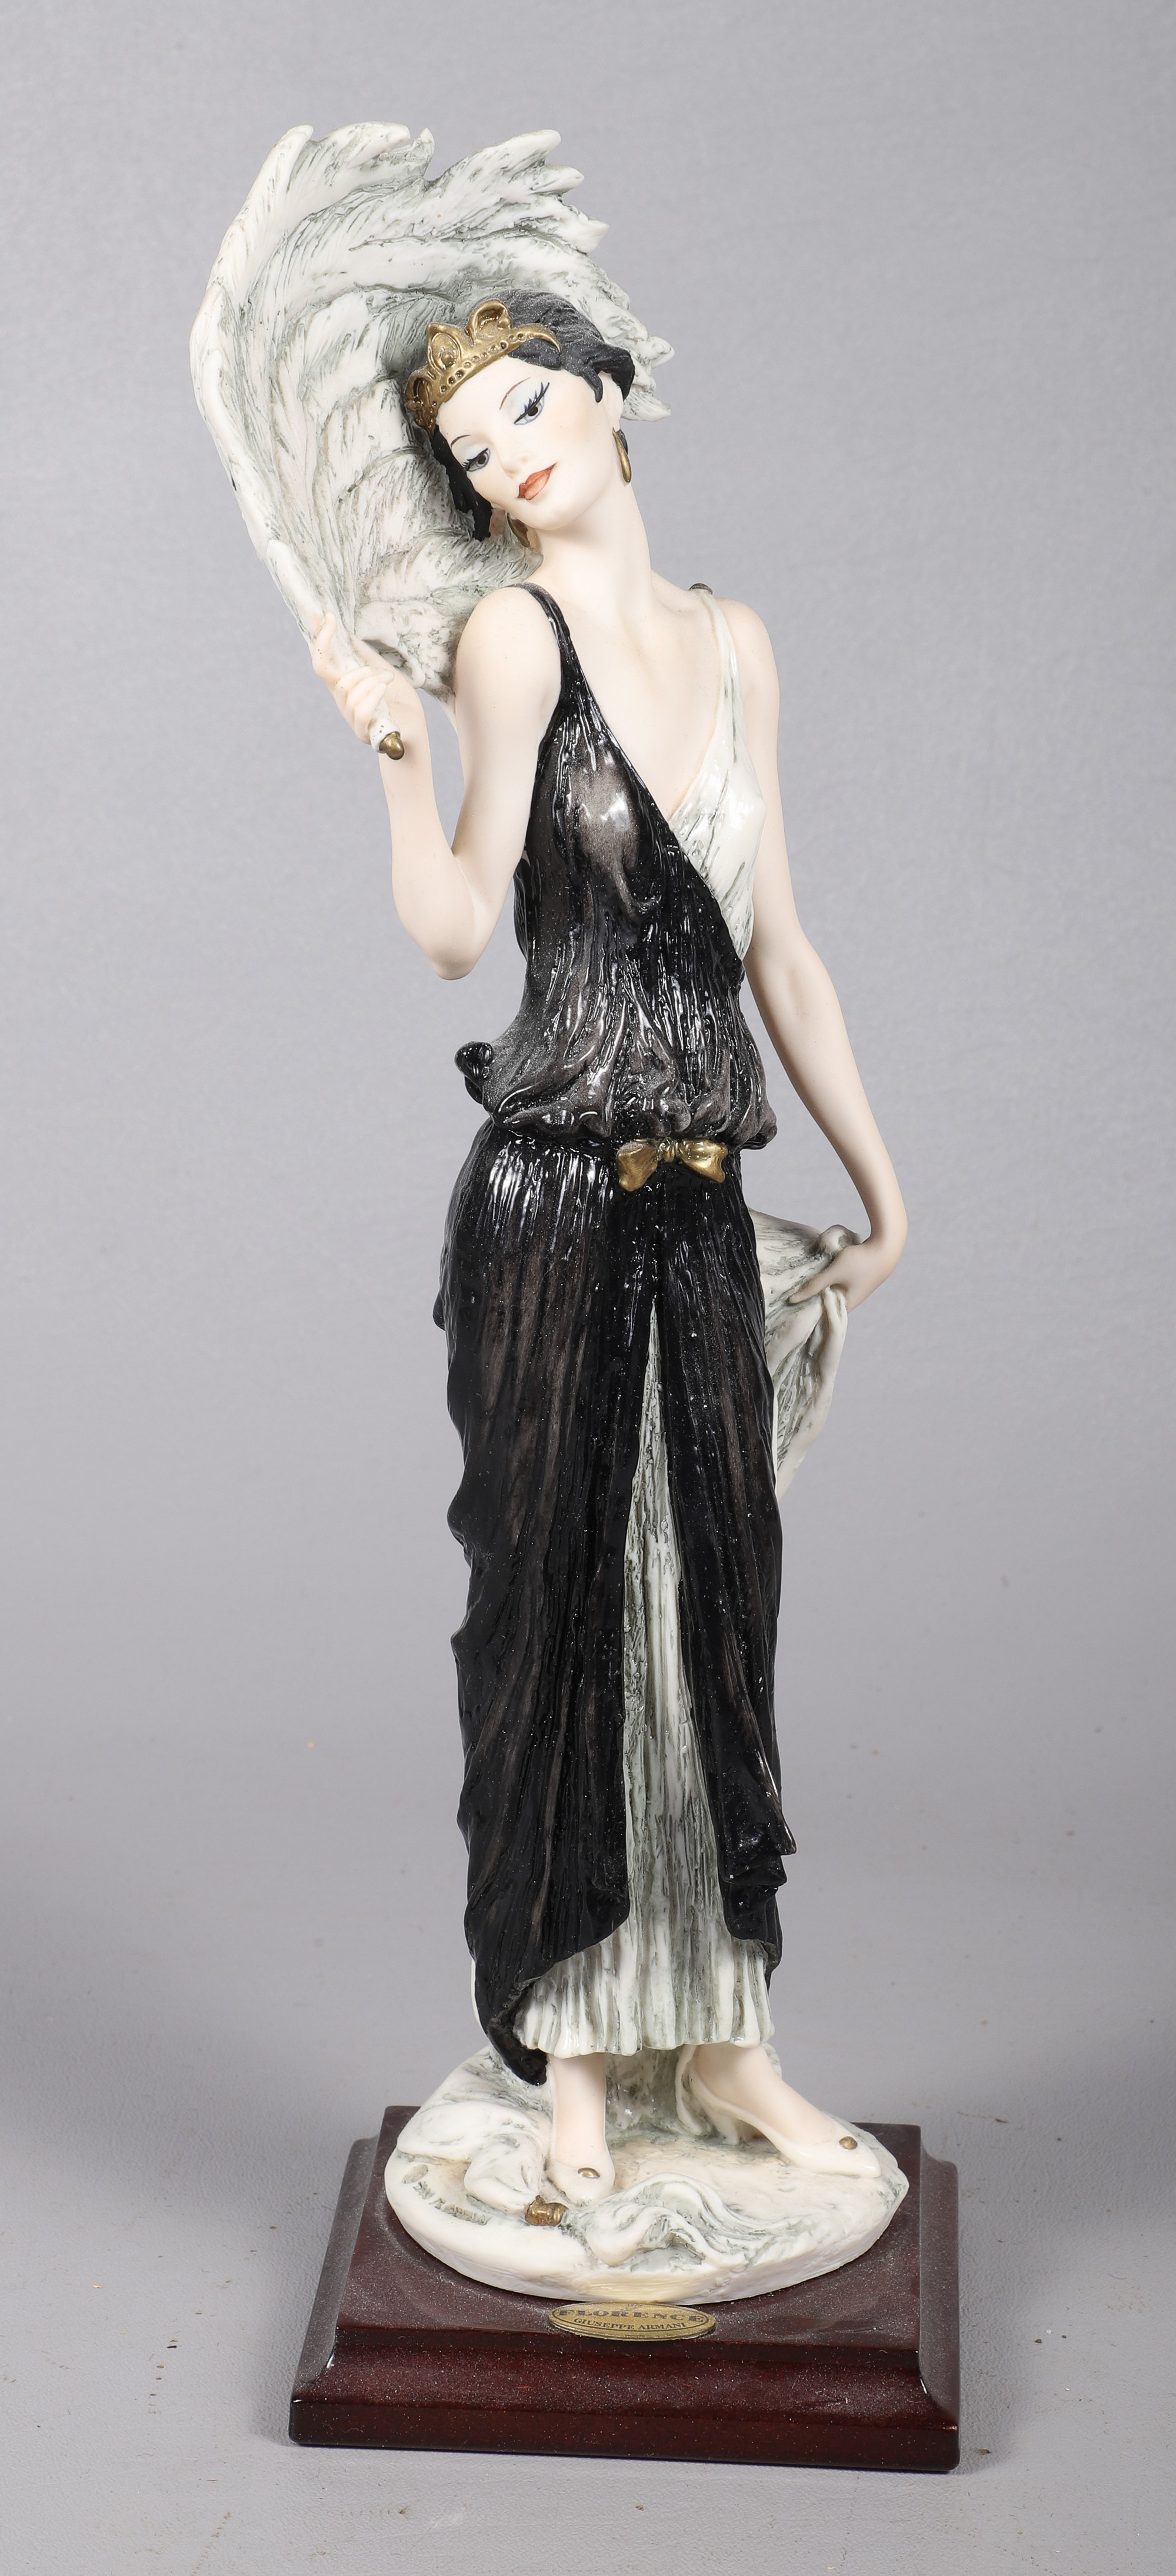 Giuseppe Armani Desiree figurine  2e193a